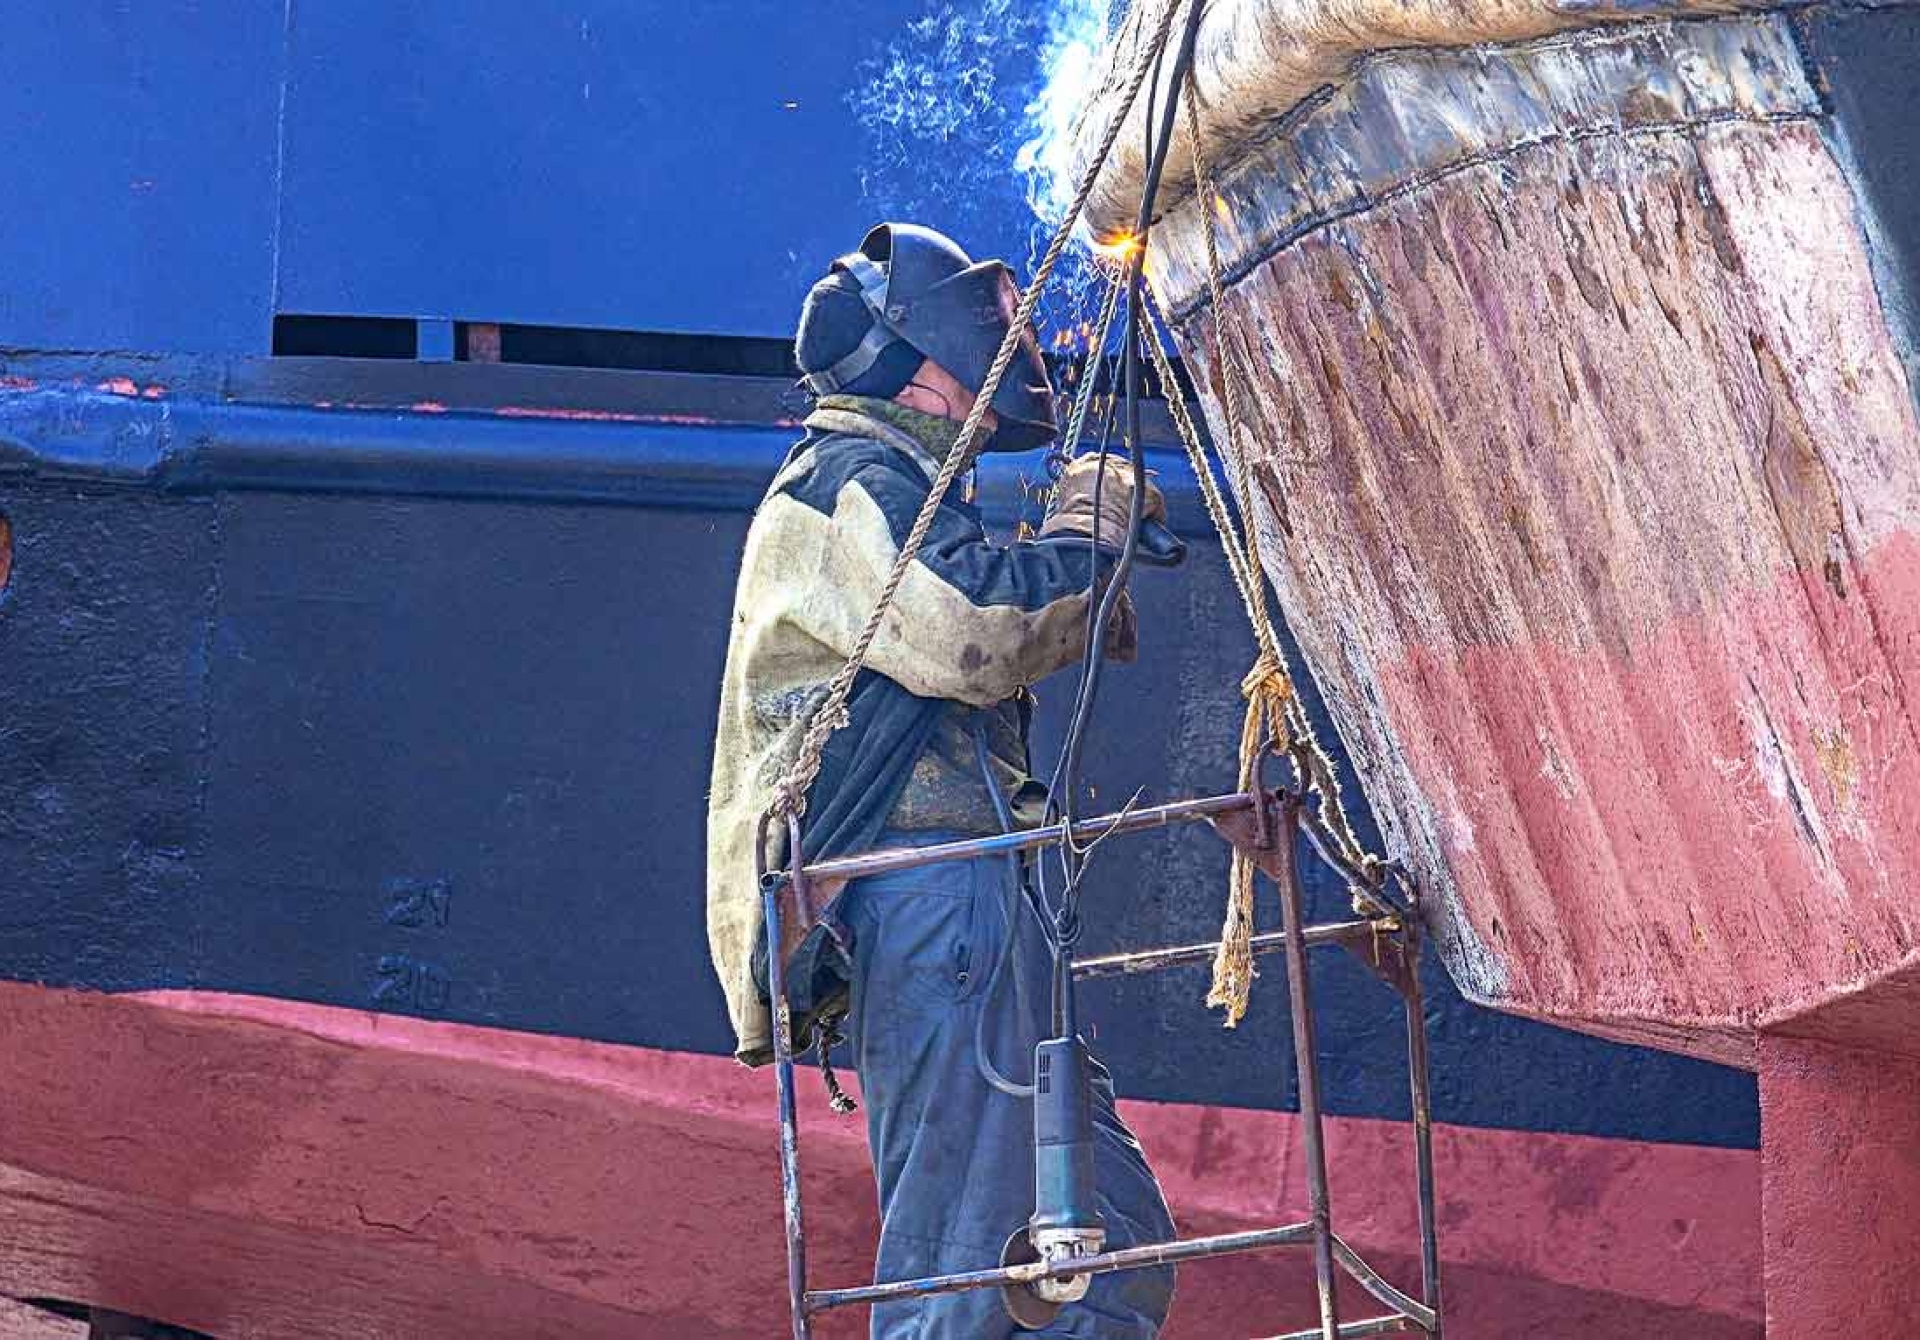 Servicio de Reparación de Barcos en Tortosa: Expertos en Soluciones y Mantenimiento de Embarcaciones